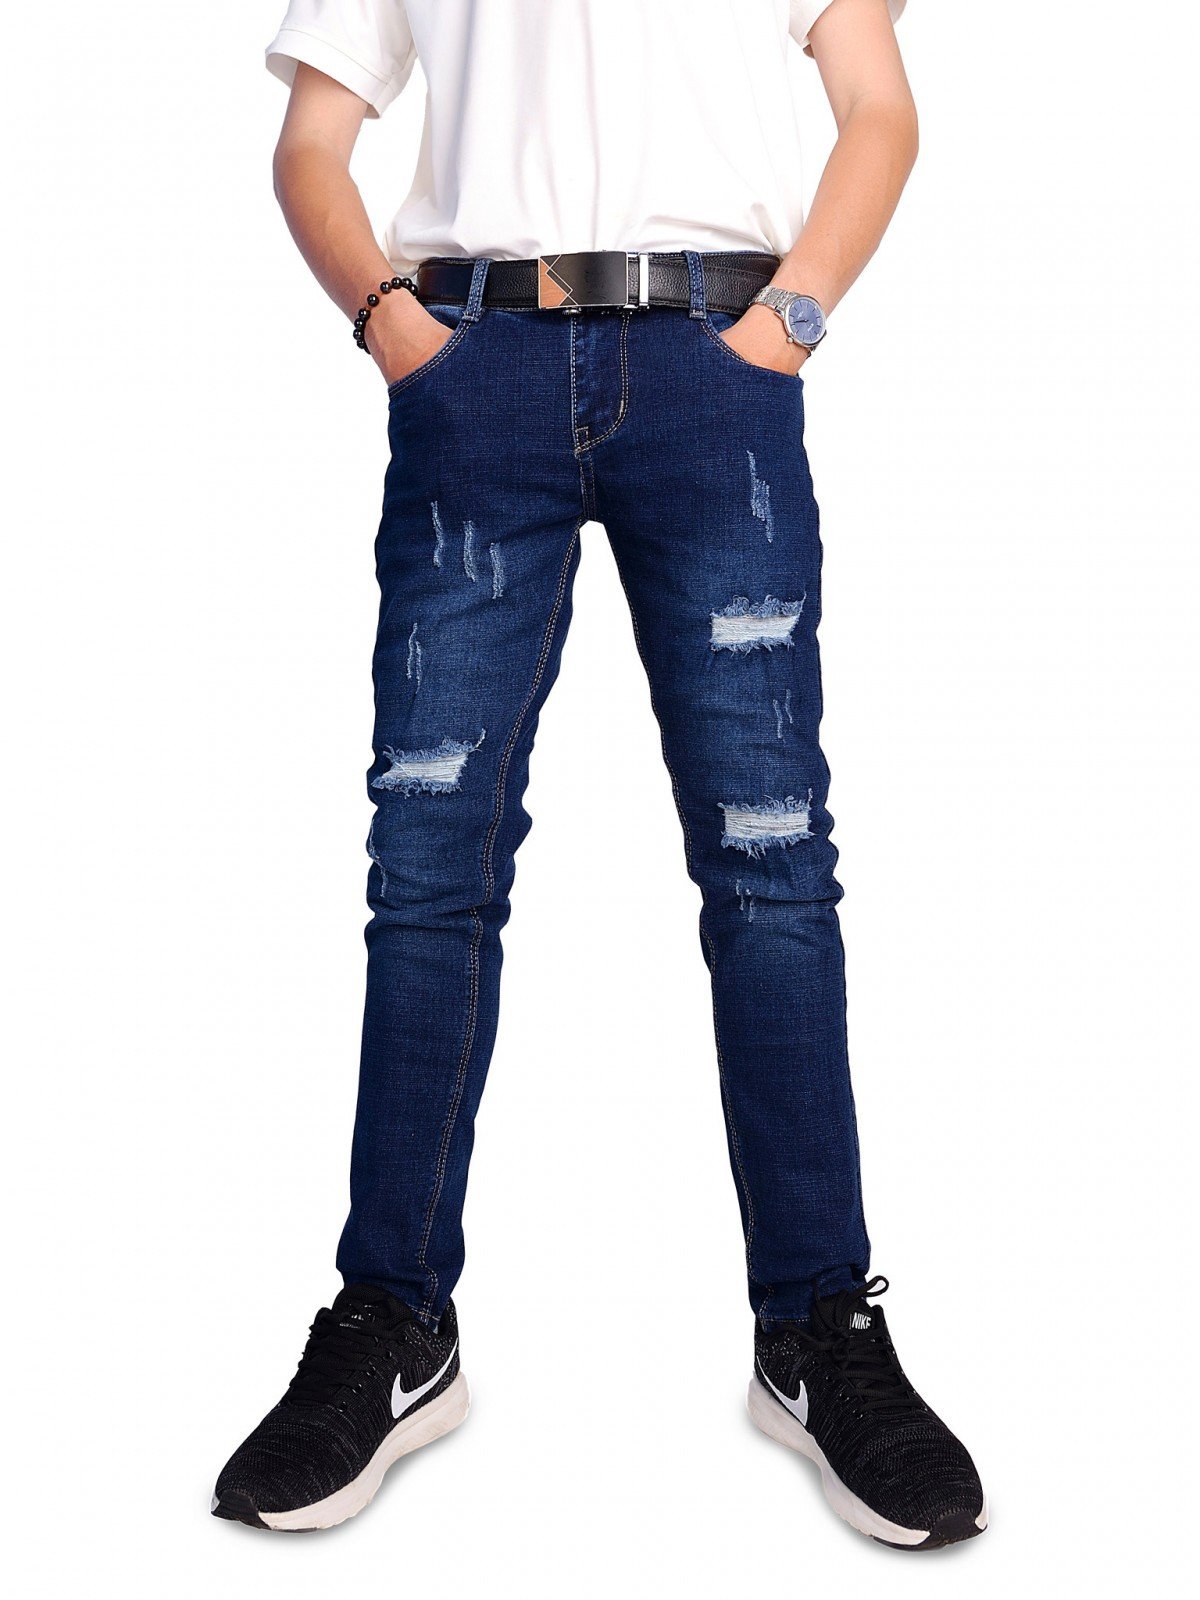 quần jeans lửng rách defining - NL0352 | thoitrangxitin.com